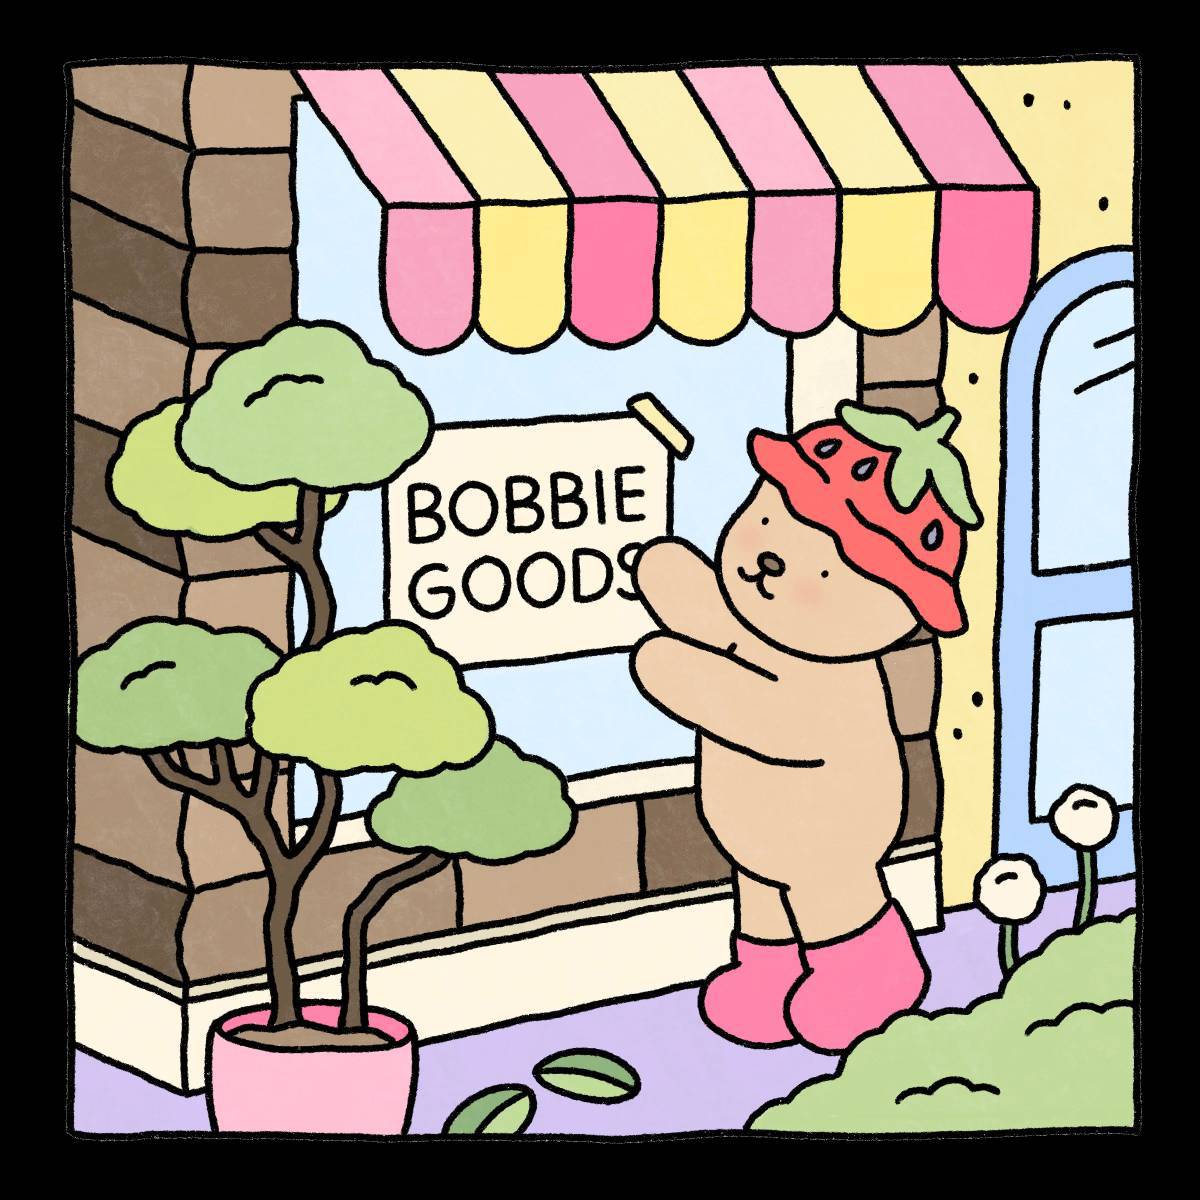 Bobbie goods #1